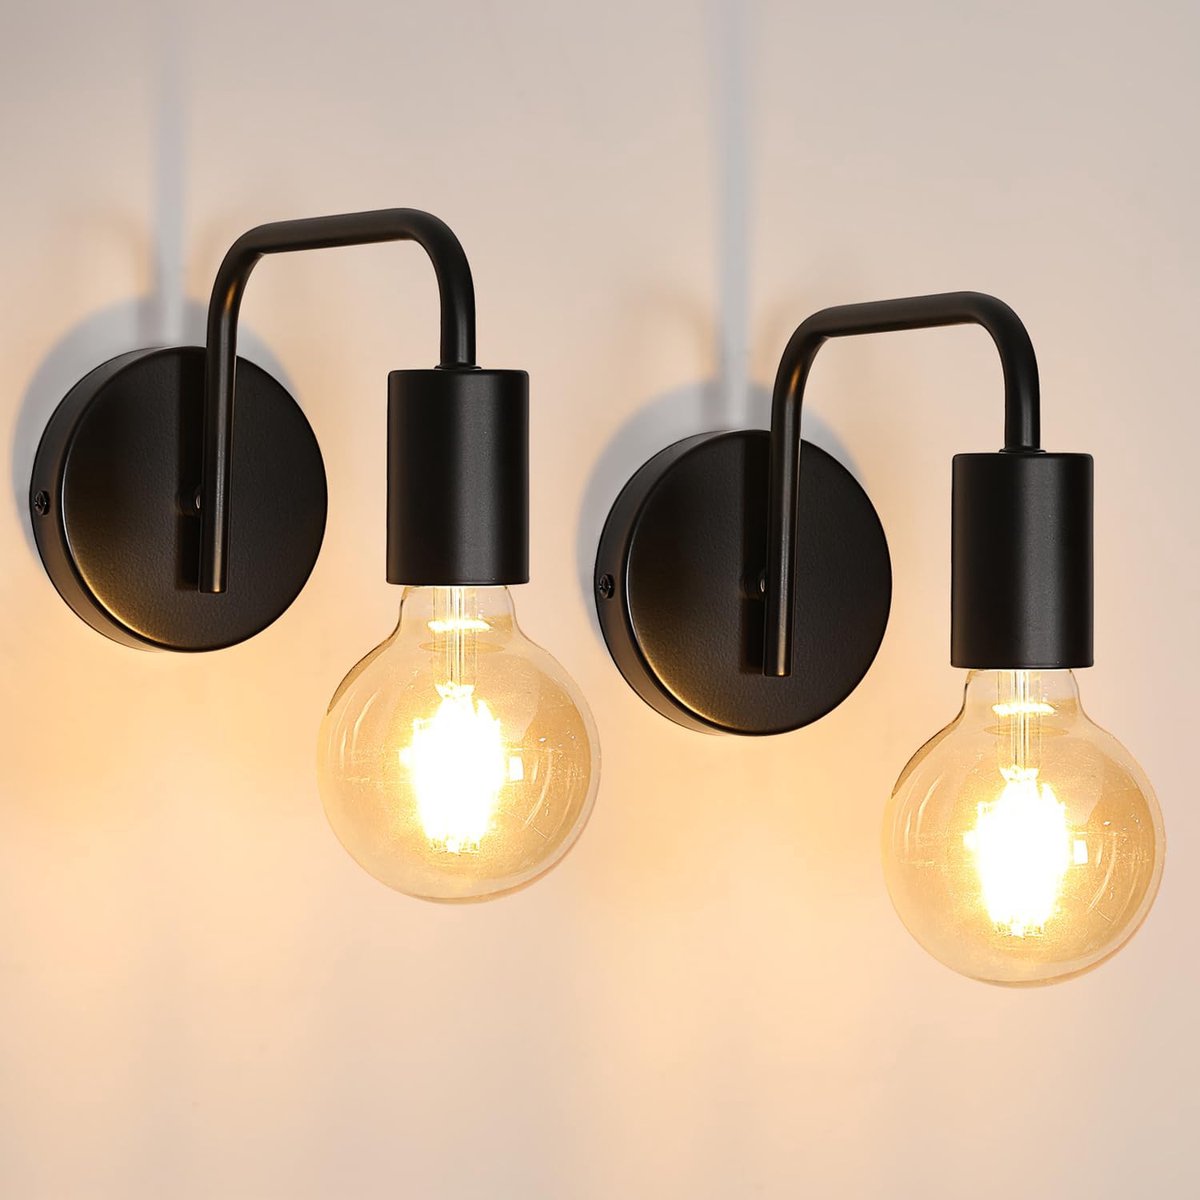 Goeco wandlampen - 20*15*10cm - Klein - Set van 2 - E27 - metalen - voor woonkamer, slaapkamer, bar, hal - lamp niet inbegrepen